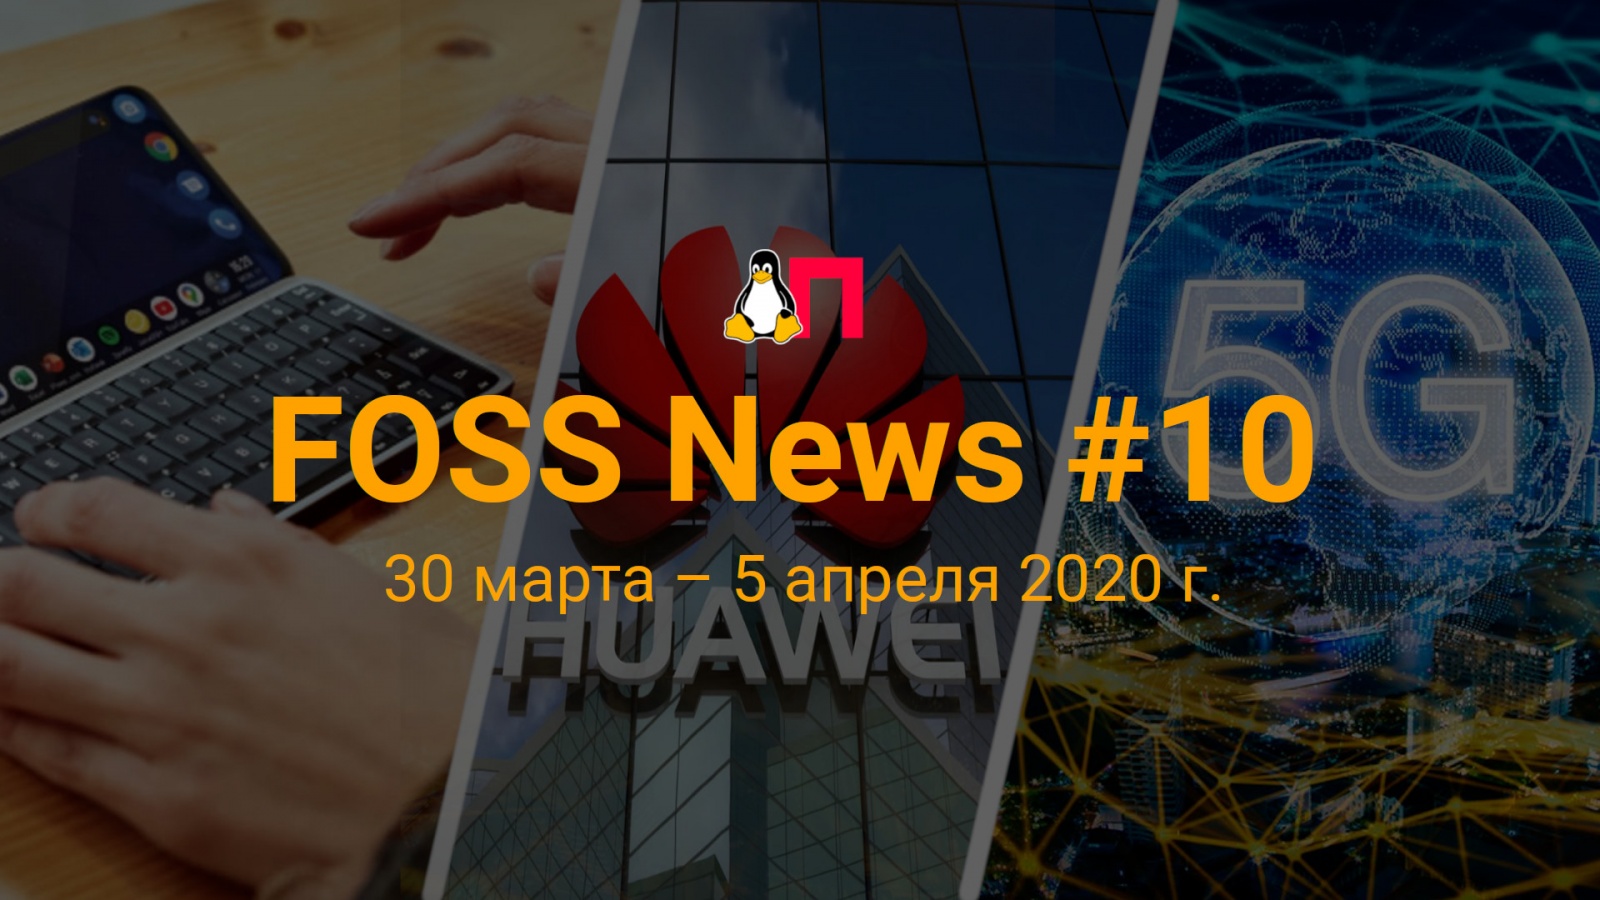 FOSS News №10 — обзор новостей свободного и открытого ПО за 30 марта — 5 апреля 2020 года - 1